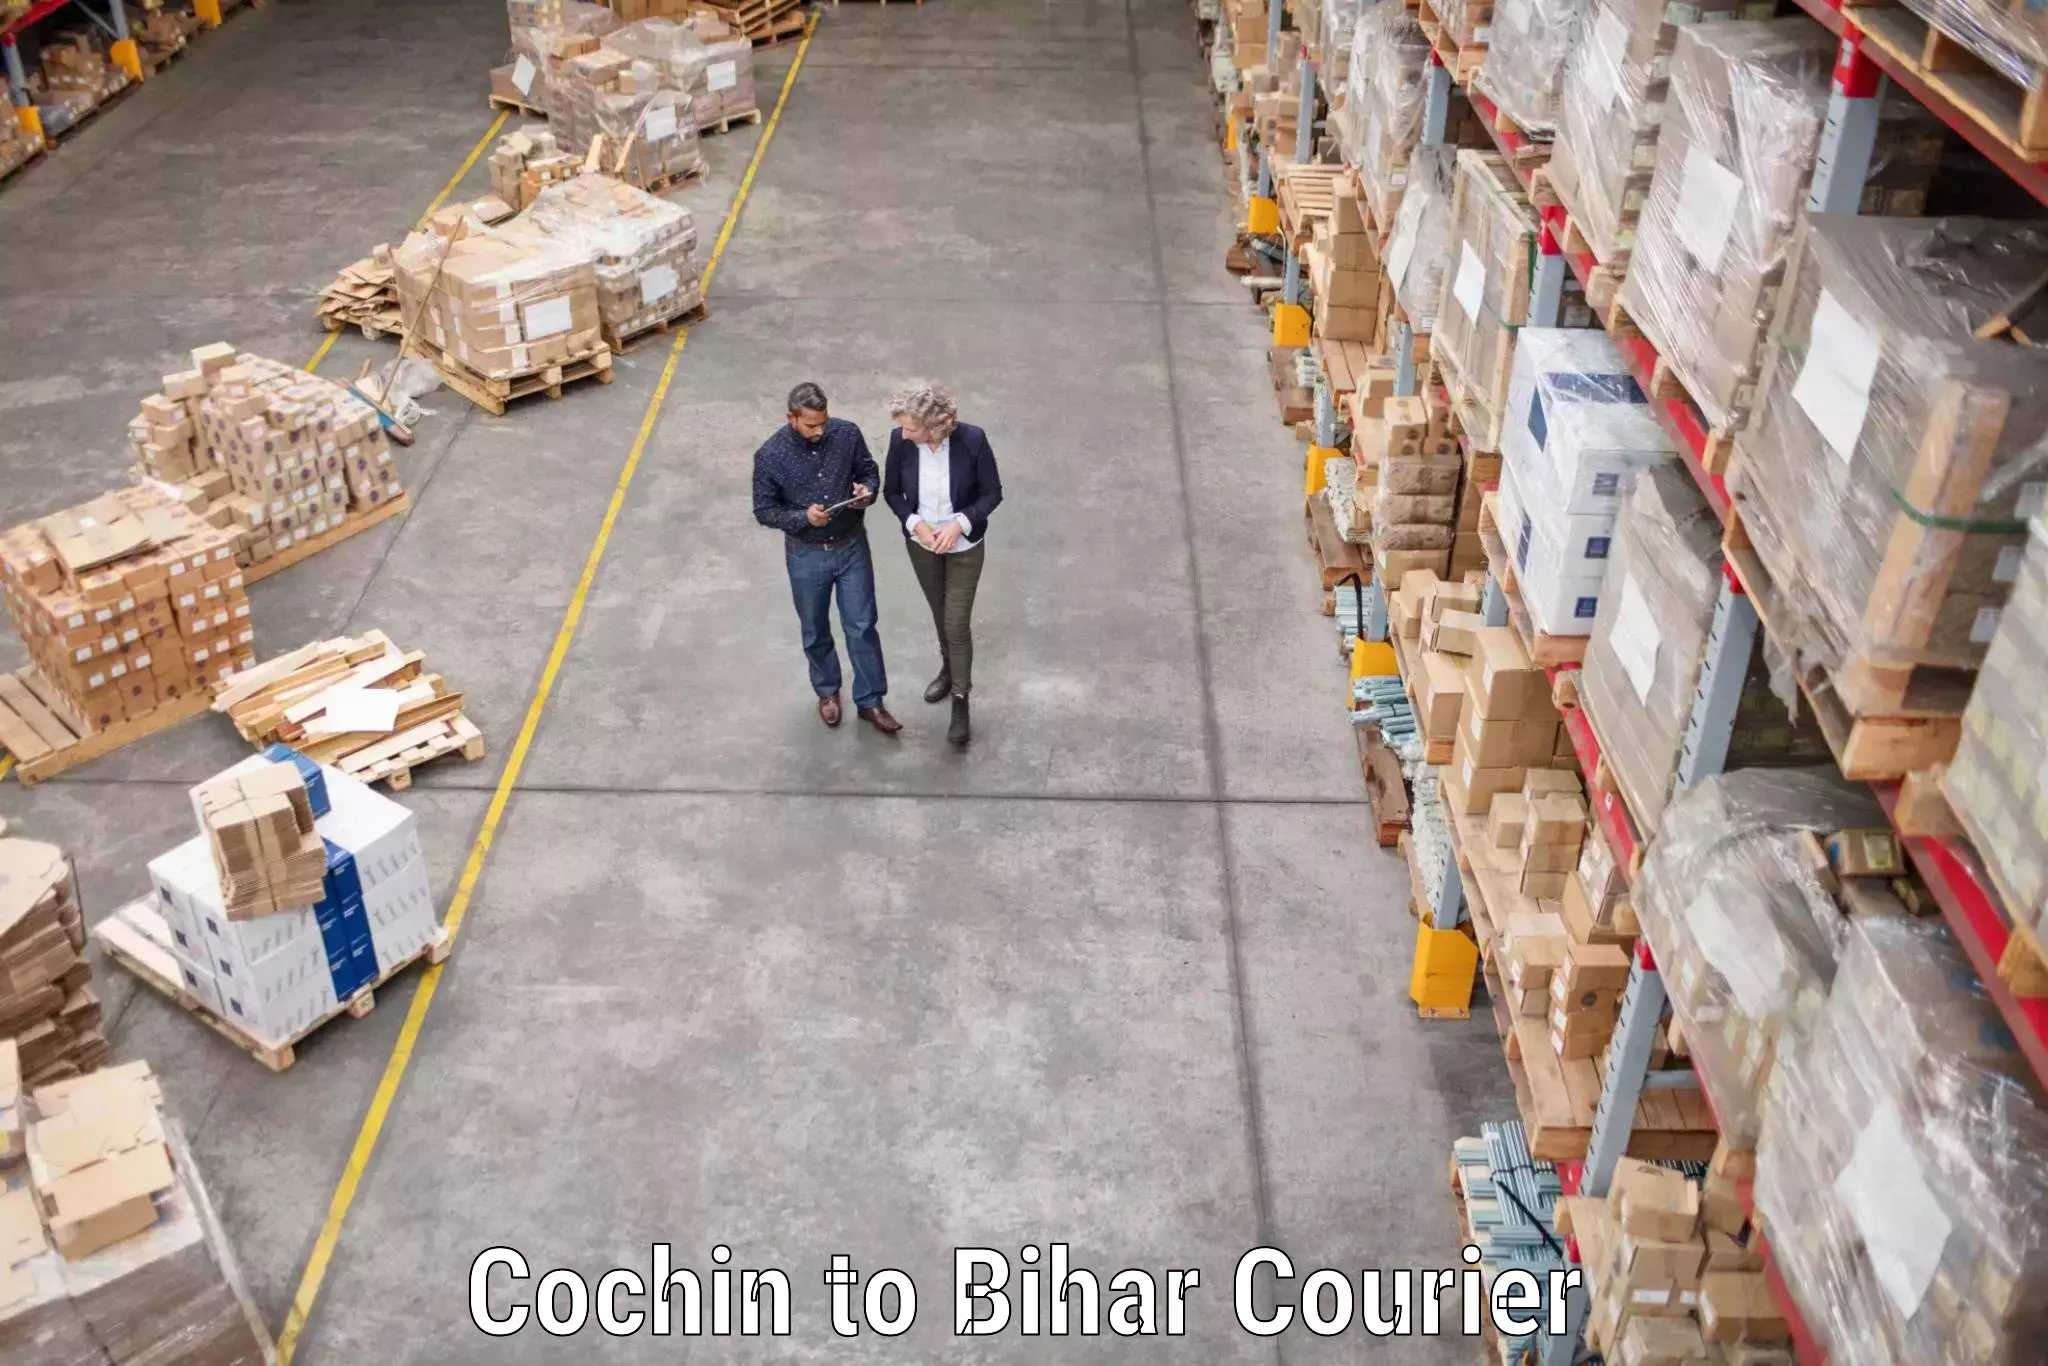 Furniture delivery service Cochin to Araria